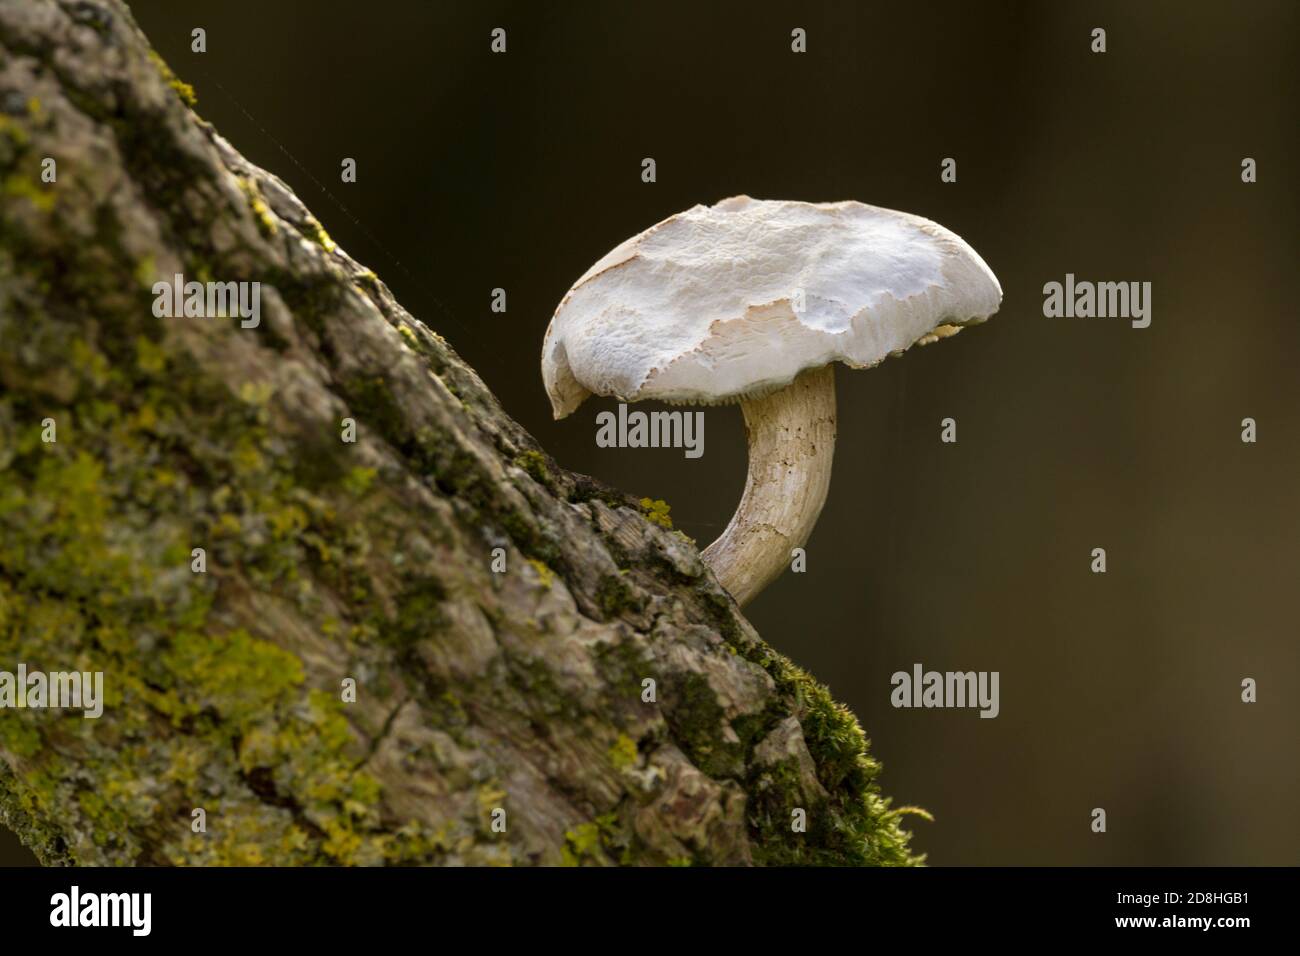 Kleine weiße Pilze nibbled Kappe schlanken gekrümmten Stamm wächst auf der Oberseite eines diagonalen Baumstamms im Querformat aufgenommen. Diagonale Komposition. Stockfoto